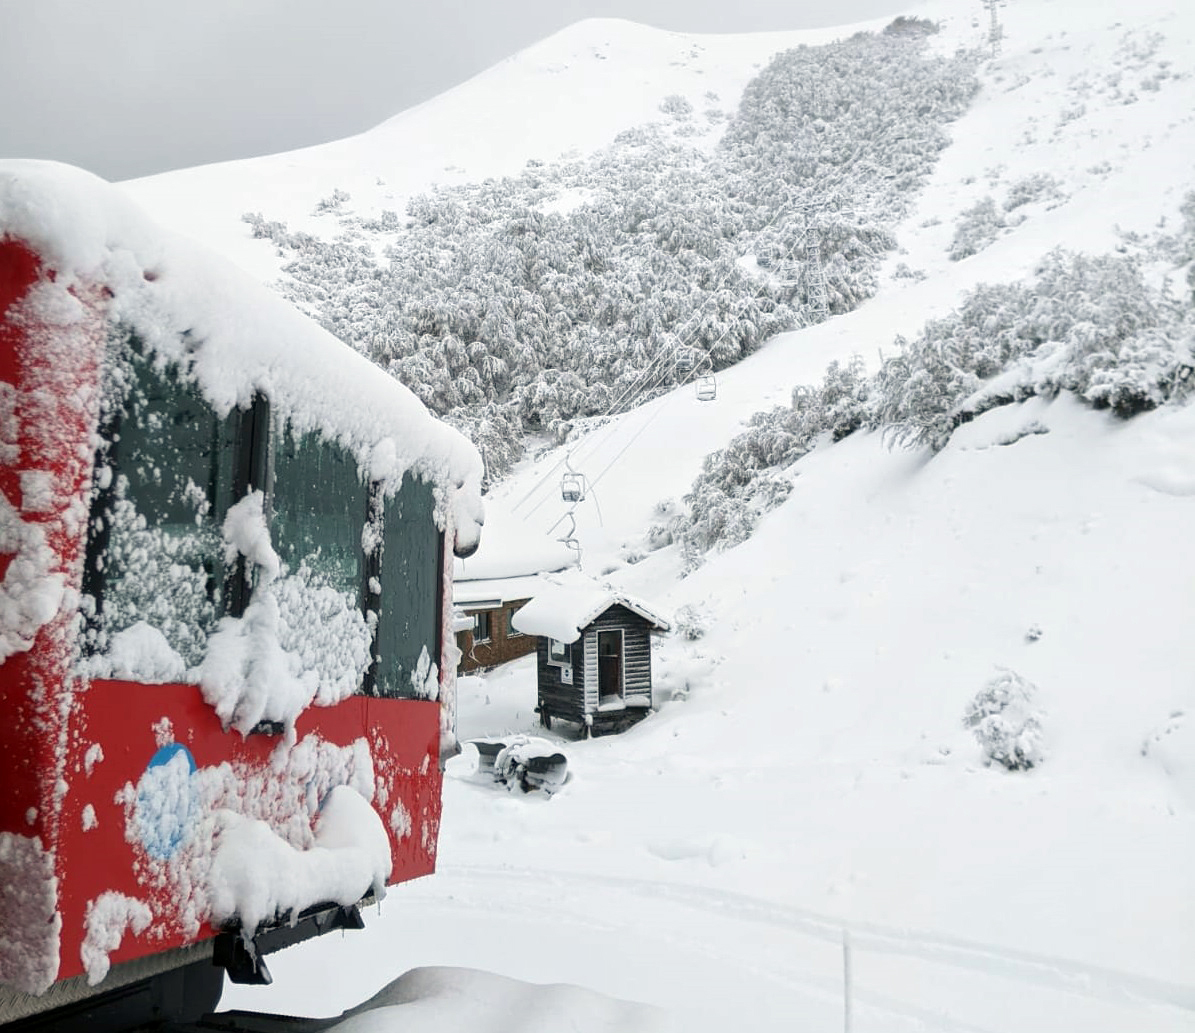 Parques emitió una alerta por nevadas en los senderos de montaña thumbnail